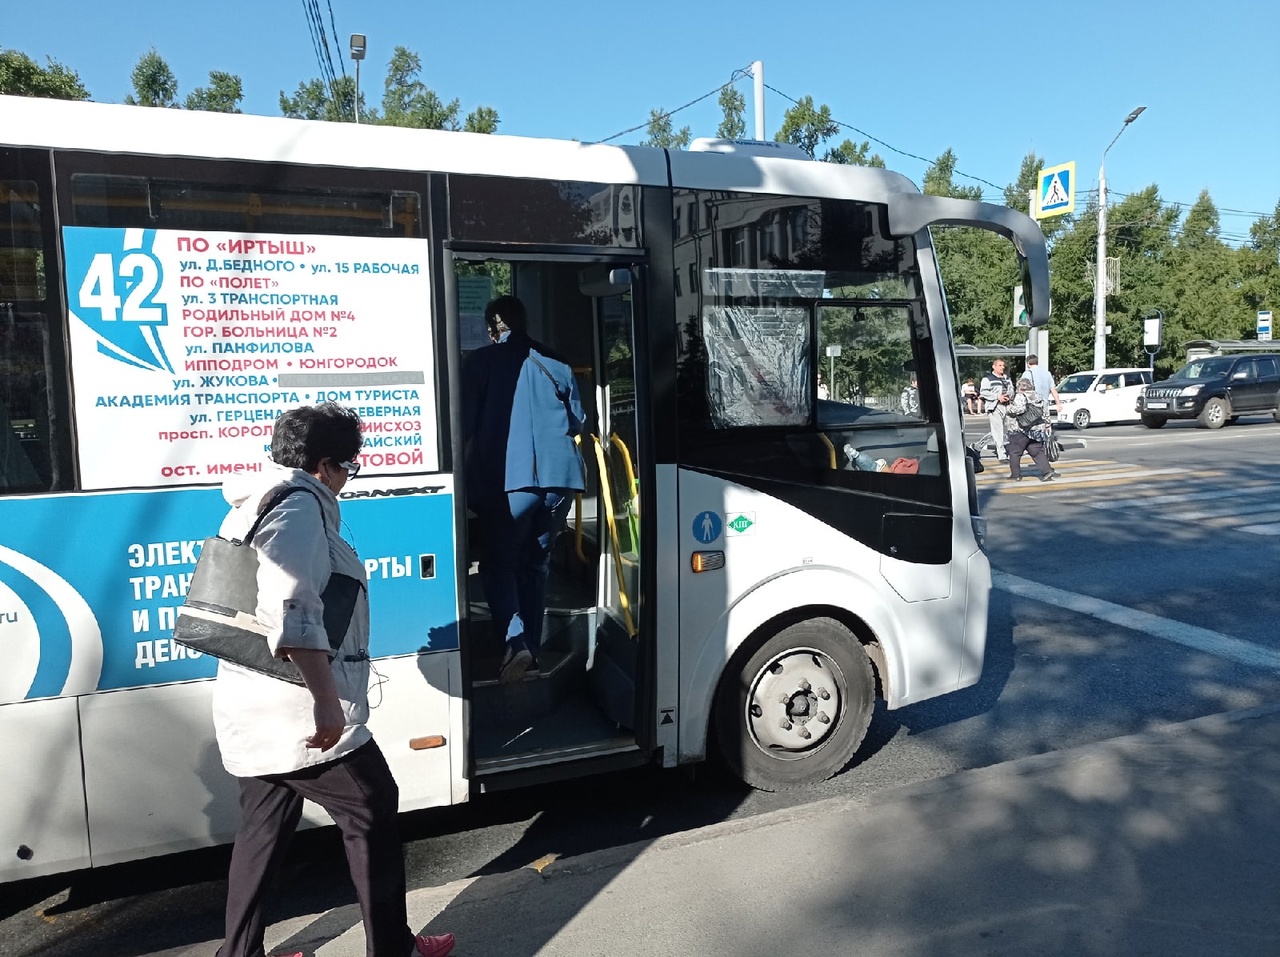 Омские автобусы снова изменят свои схемы движения #Омск #Общество #Сегодня